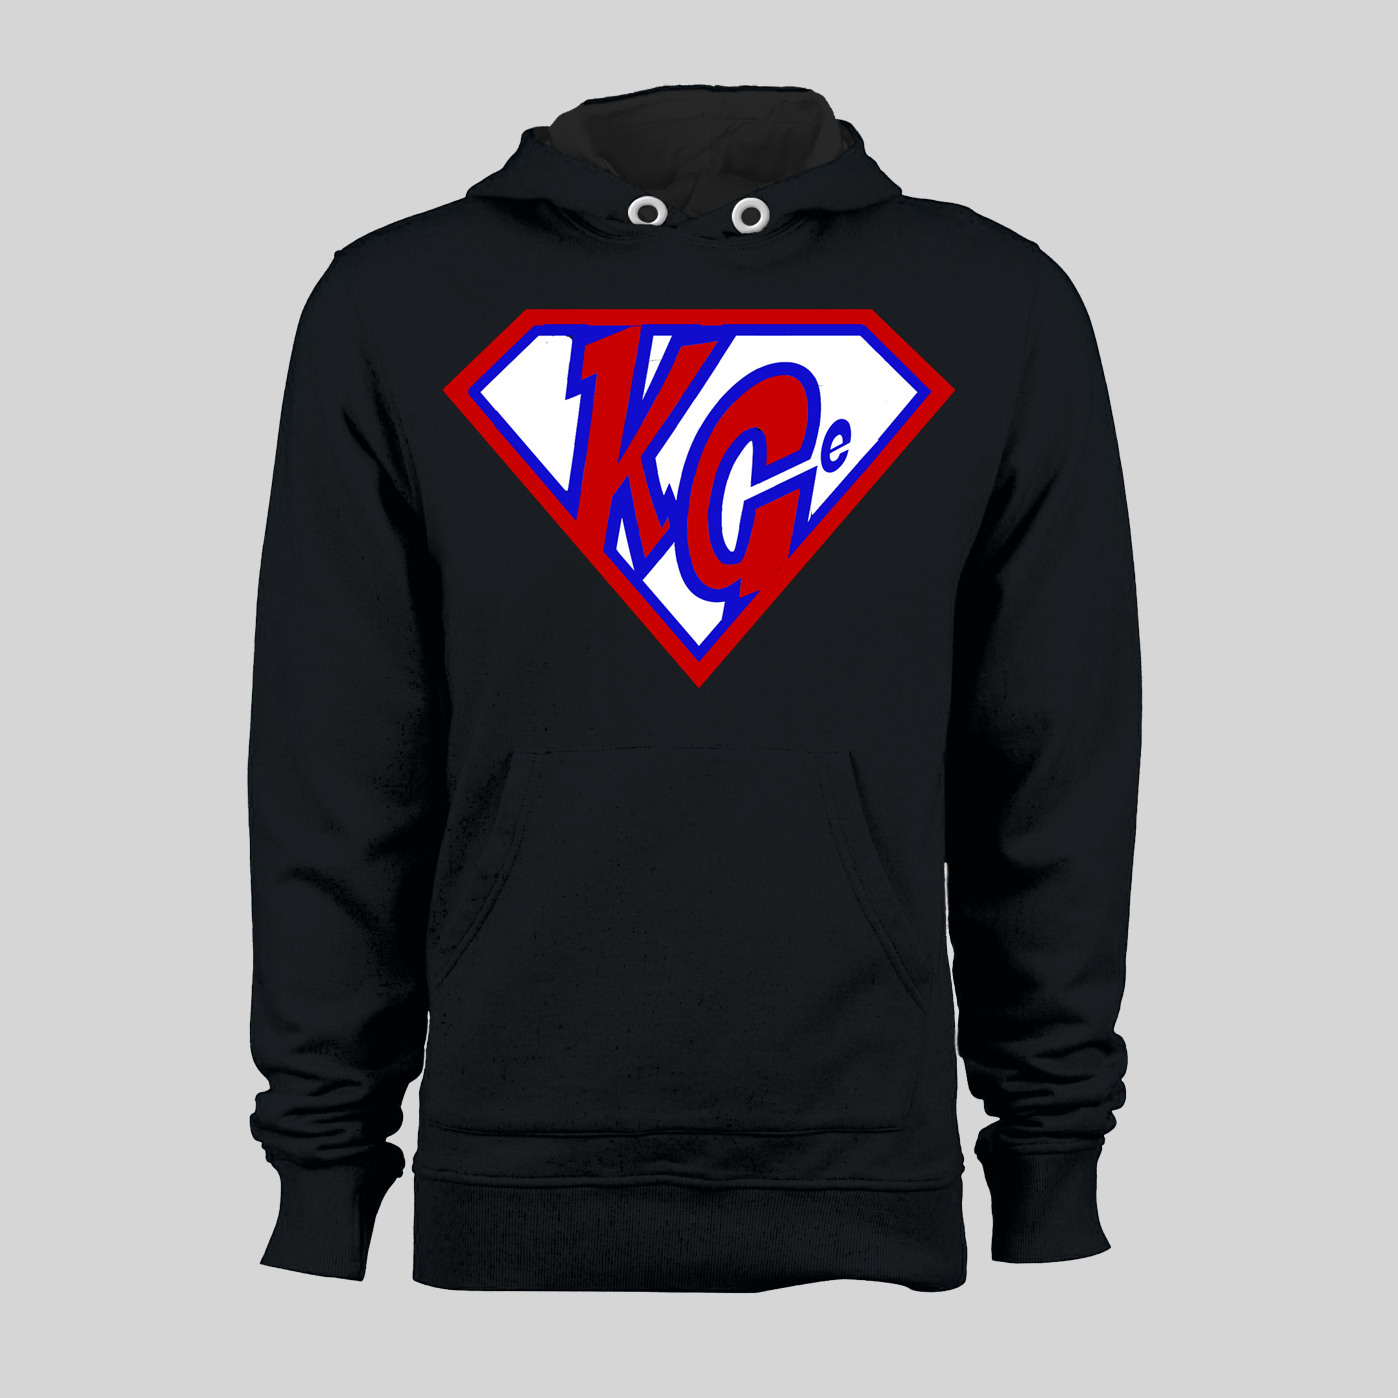 KG Super Black Hooded Sweatshirt